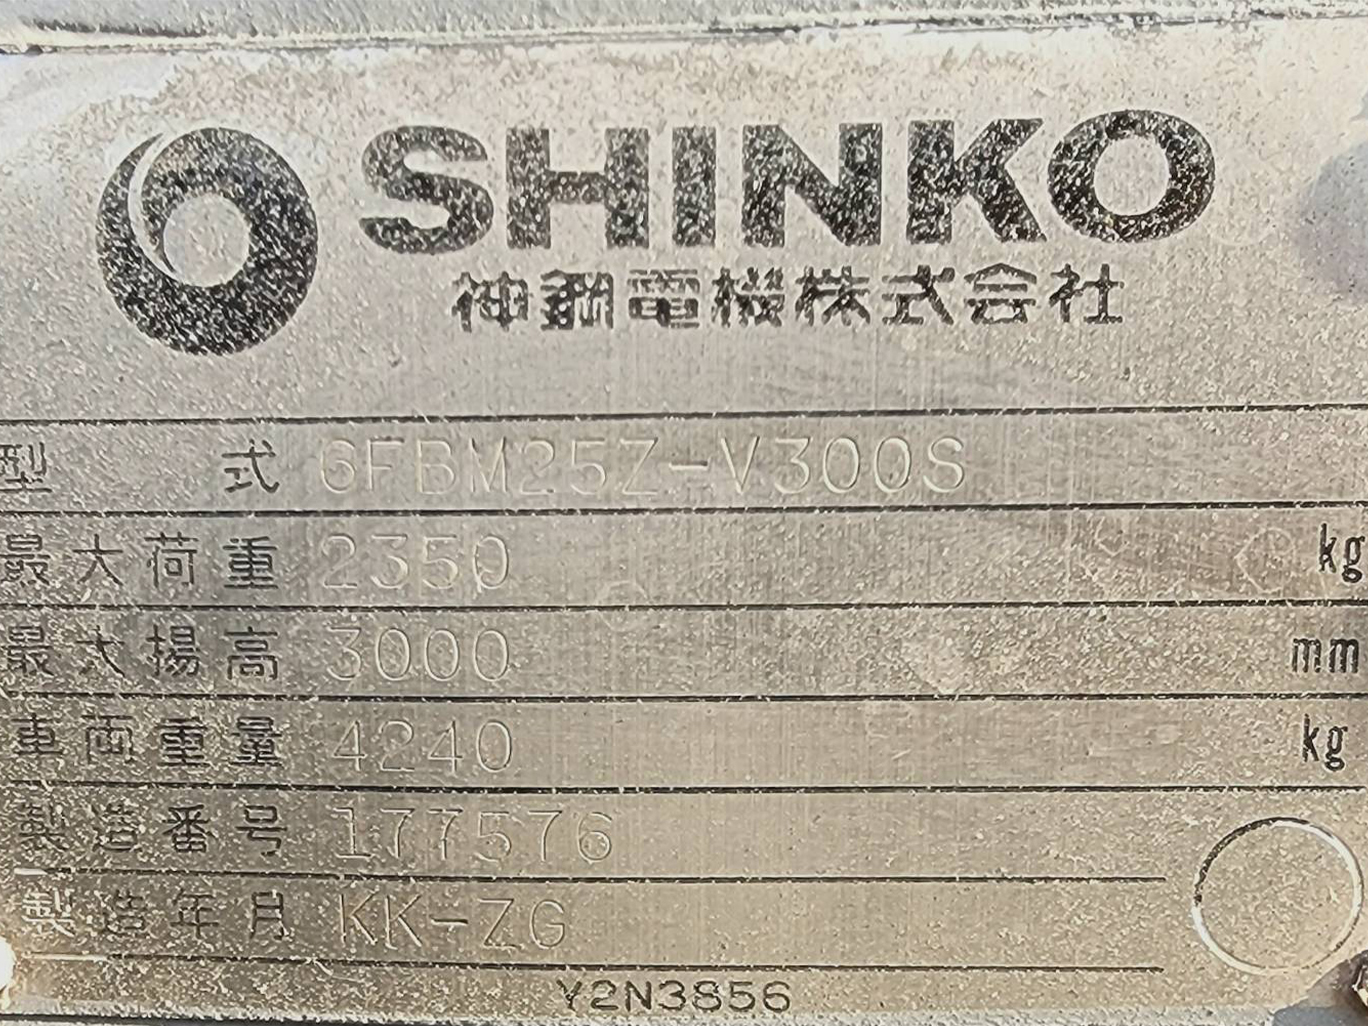 รถยกไฟฟ้า SHINKO-6FBM25Z-V300S-177576